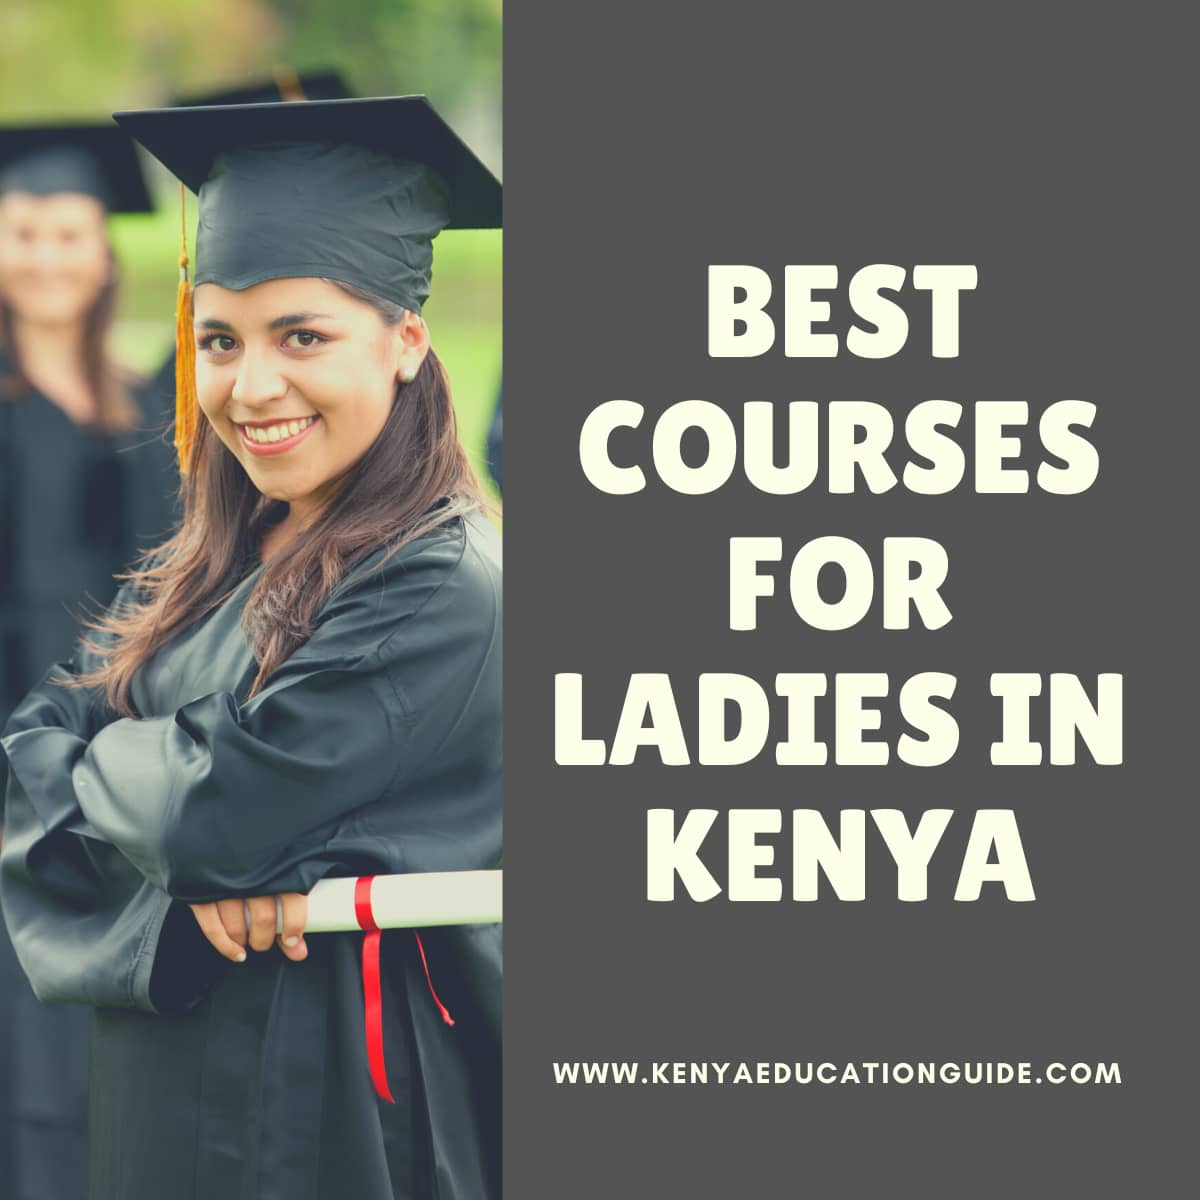 Best Courses for Ladies in Kenya